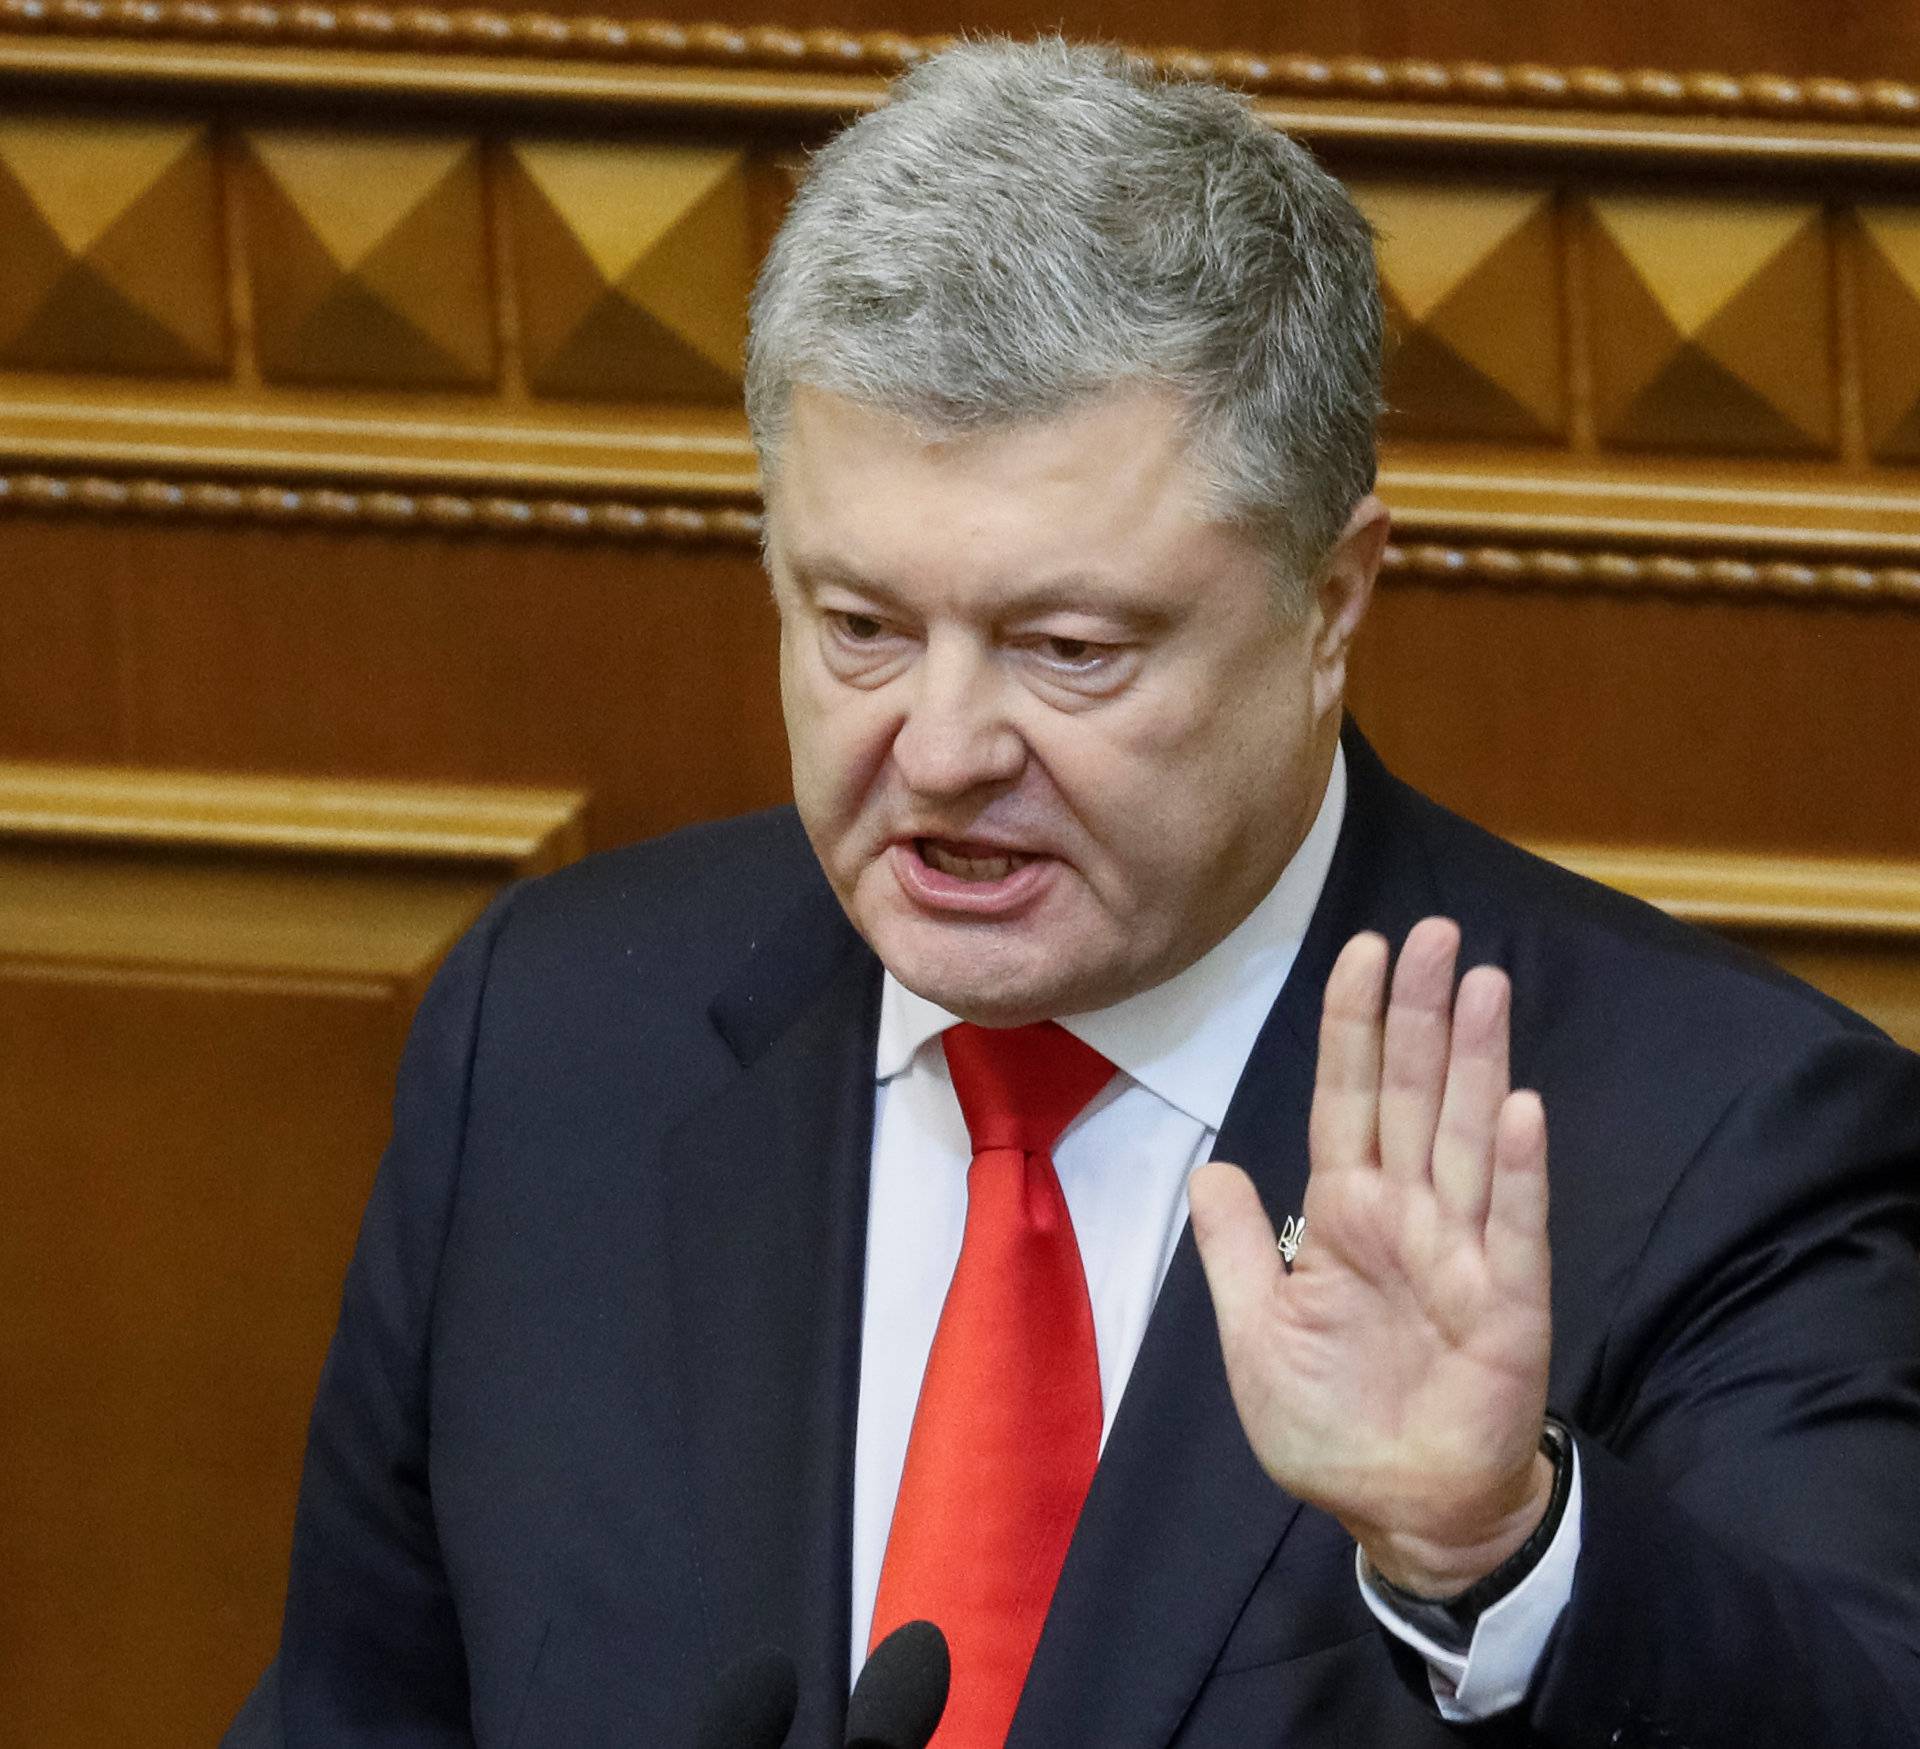 Ukrainian President Poroshenko speaks during a parliament session in Kiev